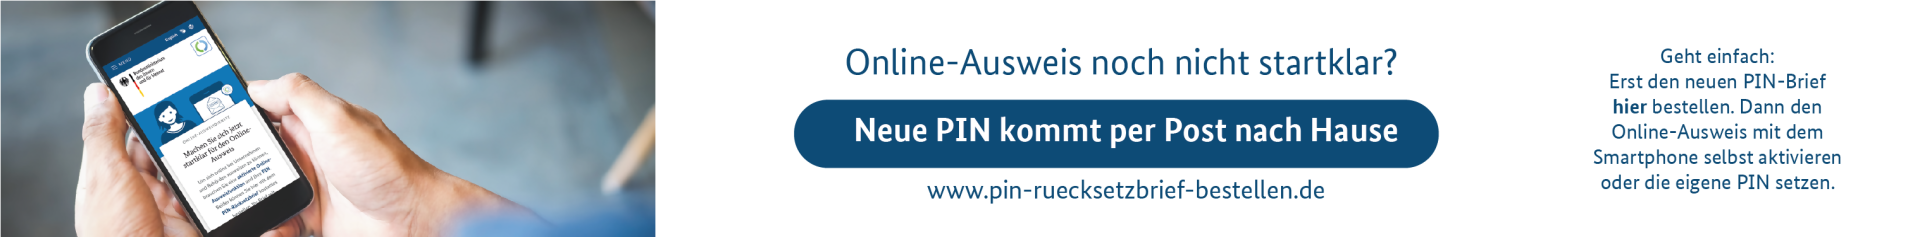 PIN-Rücksetz- und Aktivierungsdienst im Behördenportal